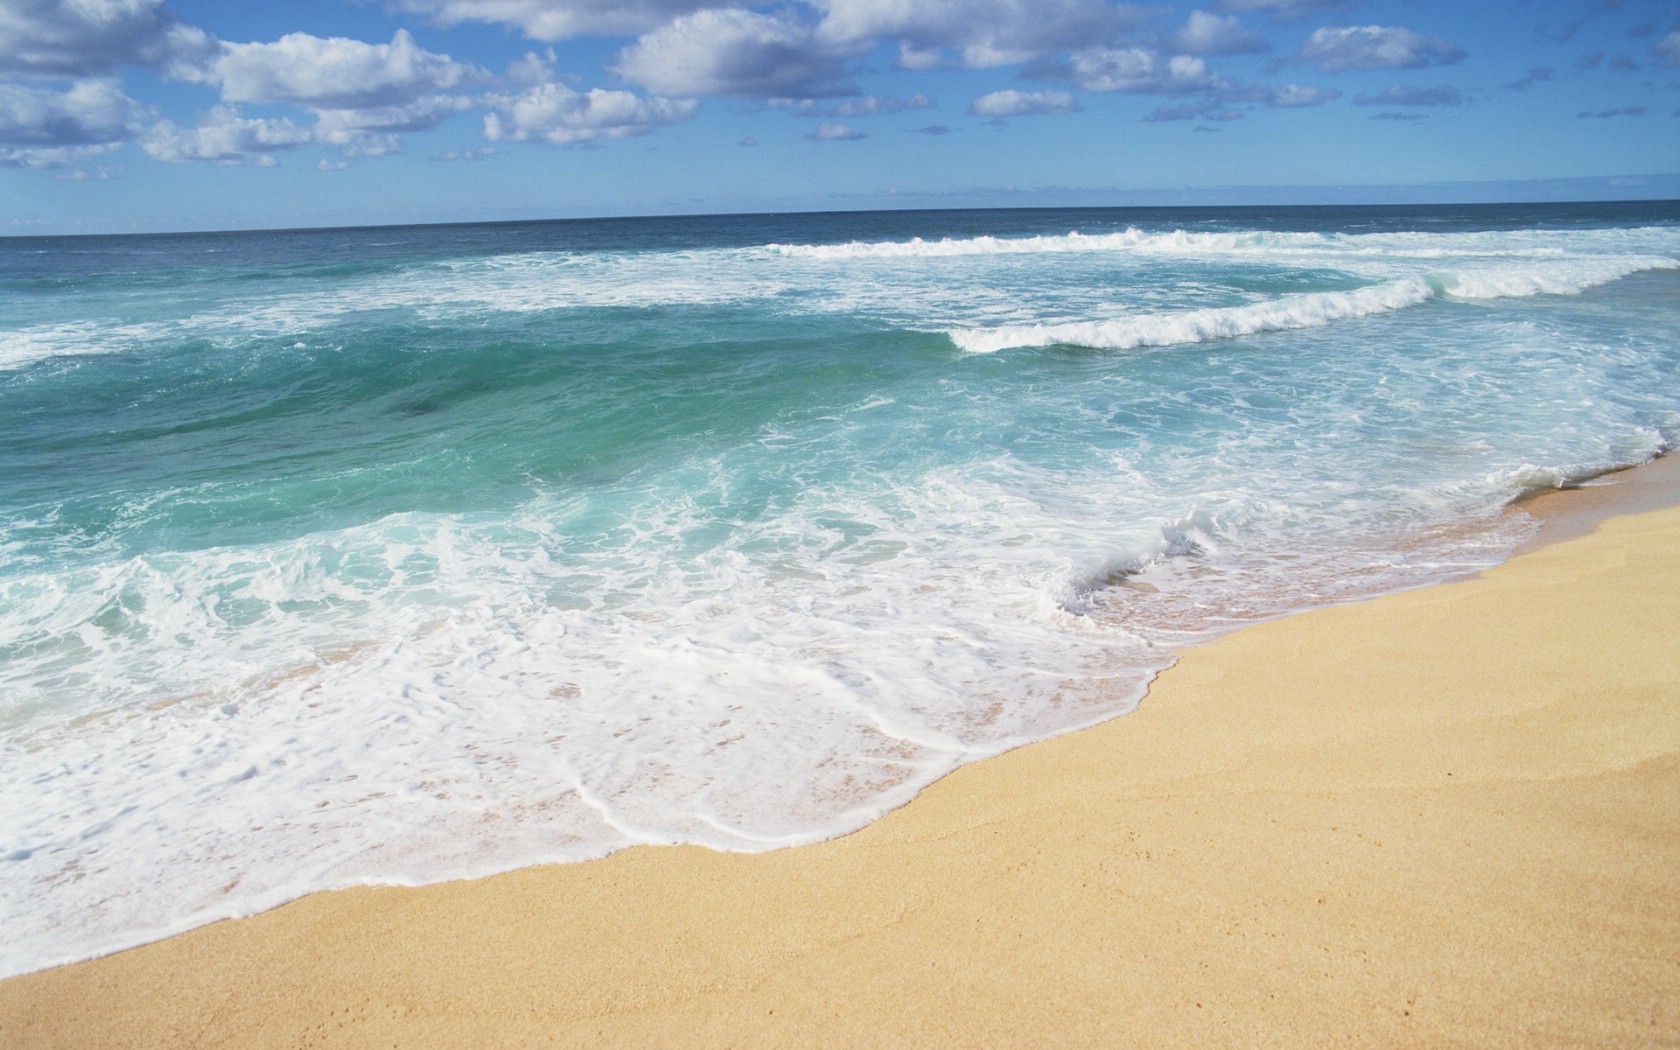 夏威夷海边风景图片高清桌面壁纸_桌面壁纸_mm4000图片大全